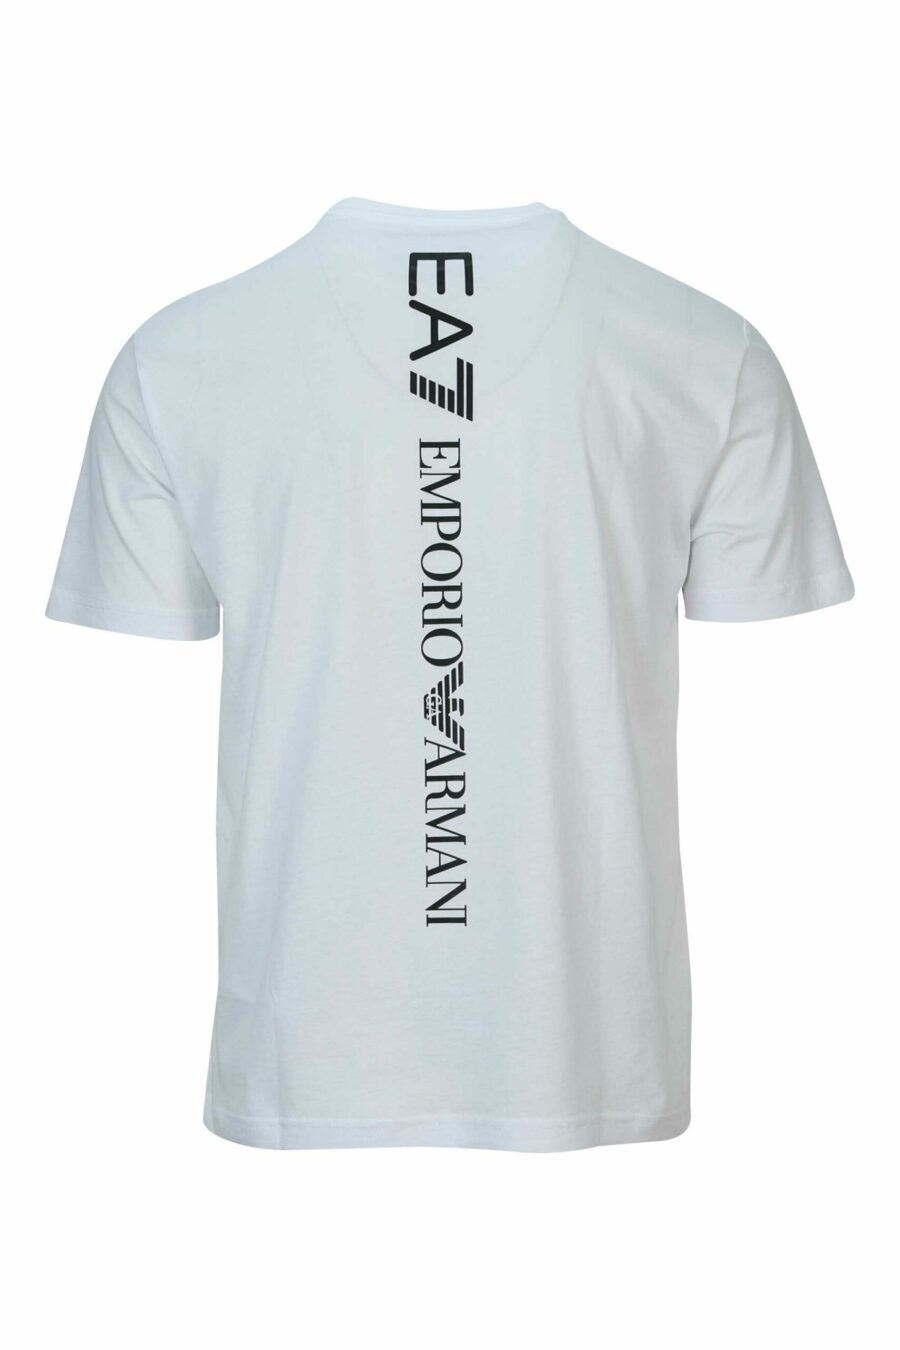 Weißes T-Shirt mit vertikalem "lux identity" Maxilogo auf dem Rücken - 8058947452569 1 skaliert